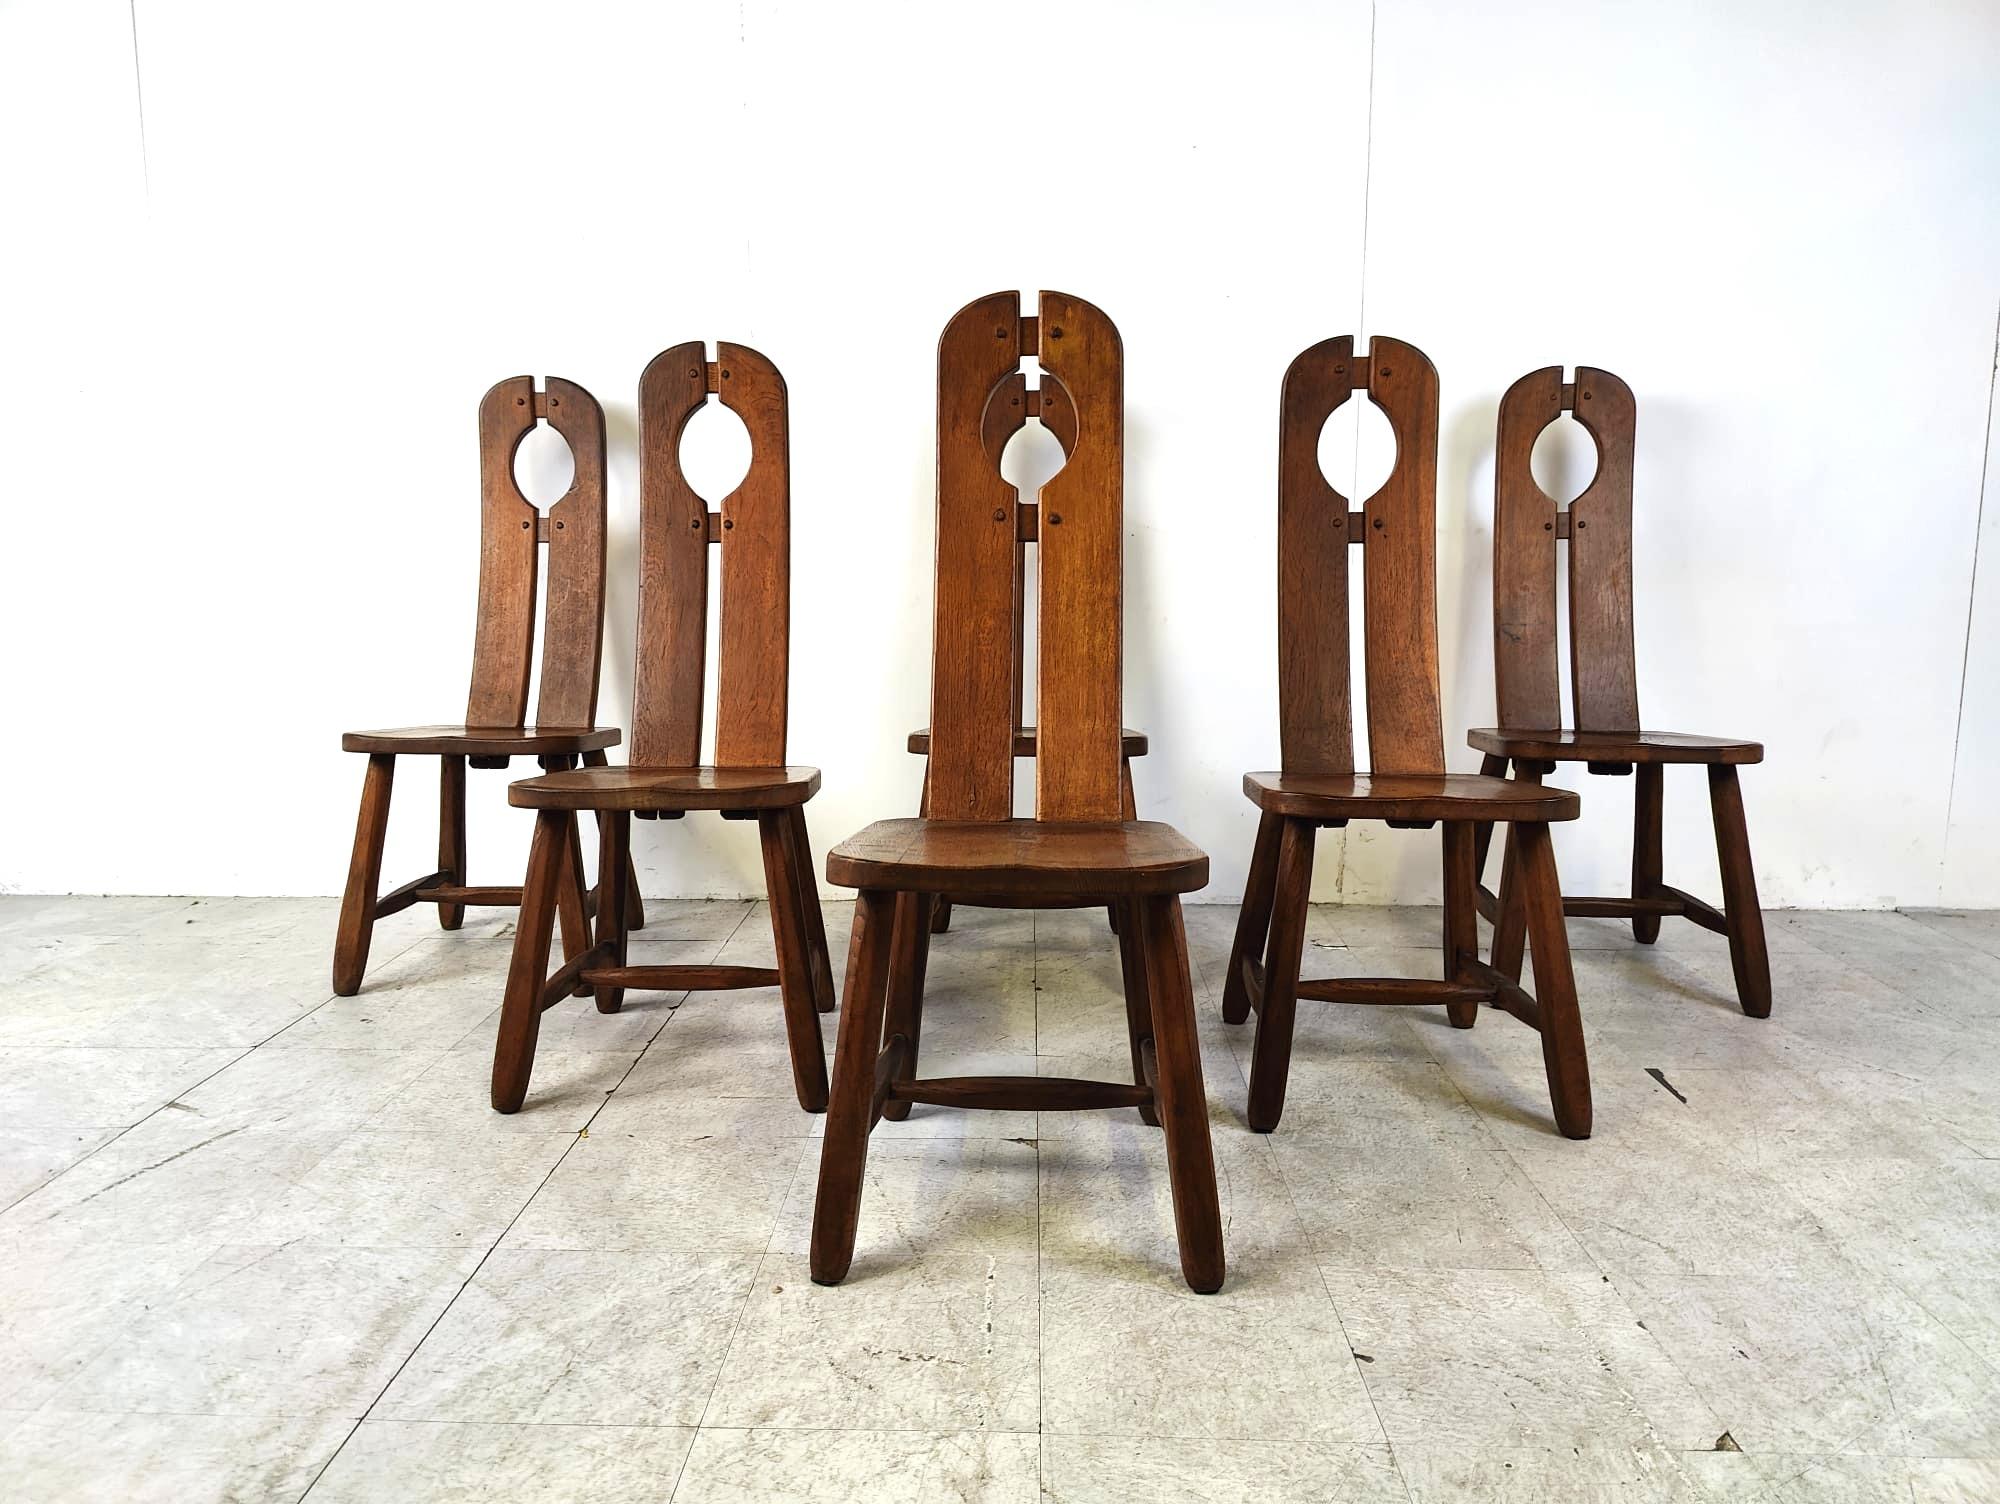 Robuste und handgefertigte Esszimmerstühle von Depuydt Kunstmeubelen in Belgien.

Die Stühle sind aus massiver Eiche gefertigt.

Schöne geteilte Rückwände mit ineinandergreifenden Holzteilen.

Diese Stühle und der Tisch werden lange halten.

Guter